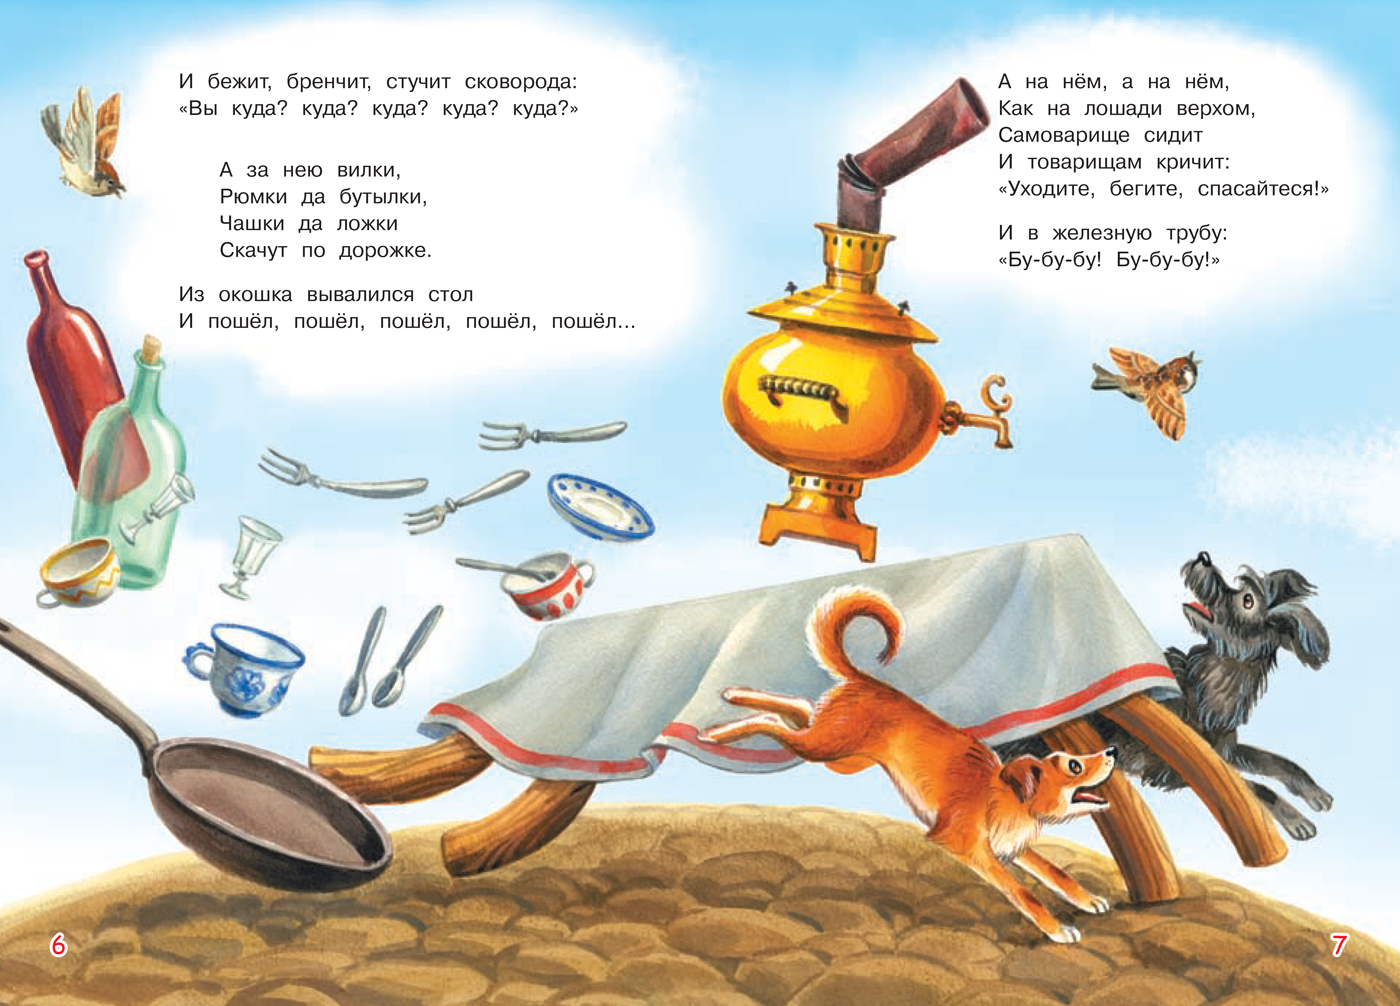 Иллюстрации к сказкам Чуковского Федорино горе